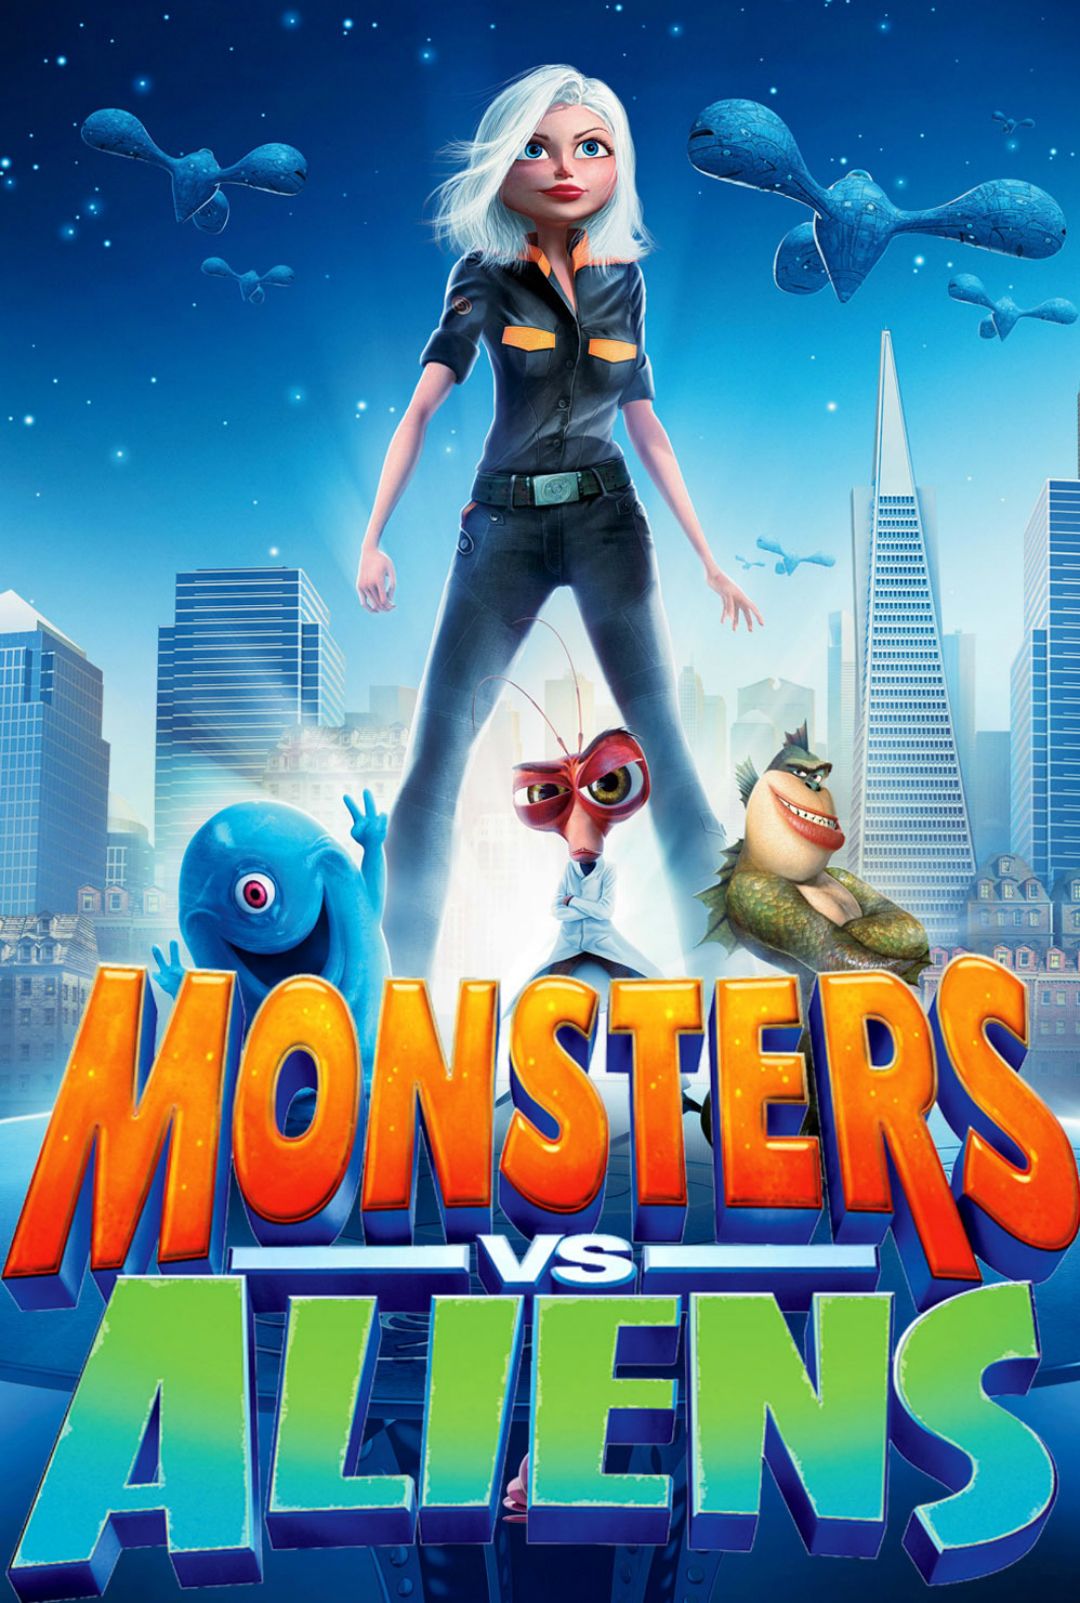 Monsters Vs Aliens wallpaper, Movie, HQ Monsters Vs Aliens pictureK Wallpaper 2019